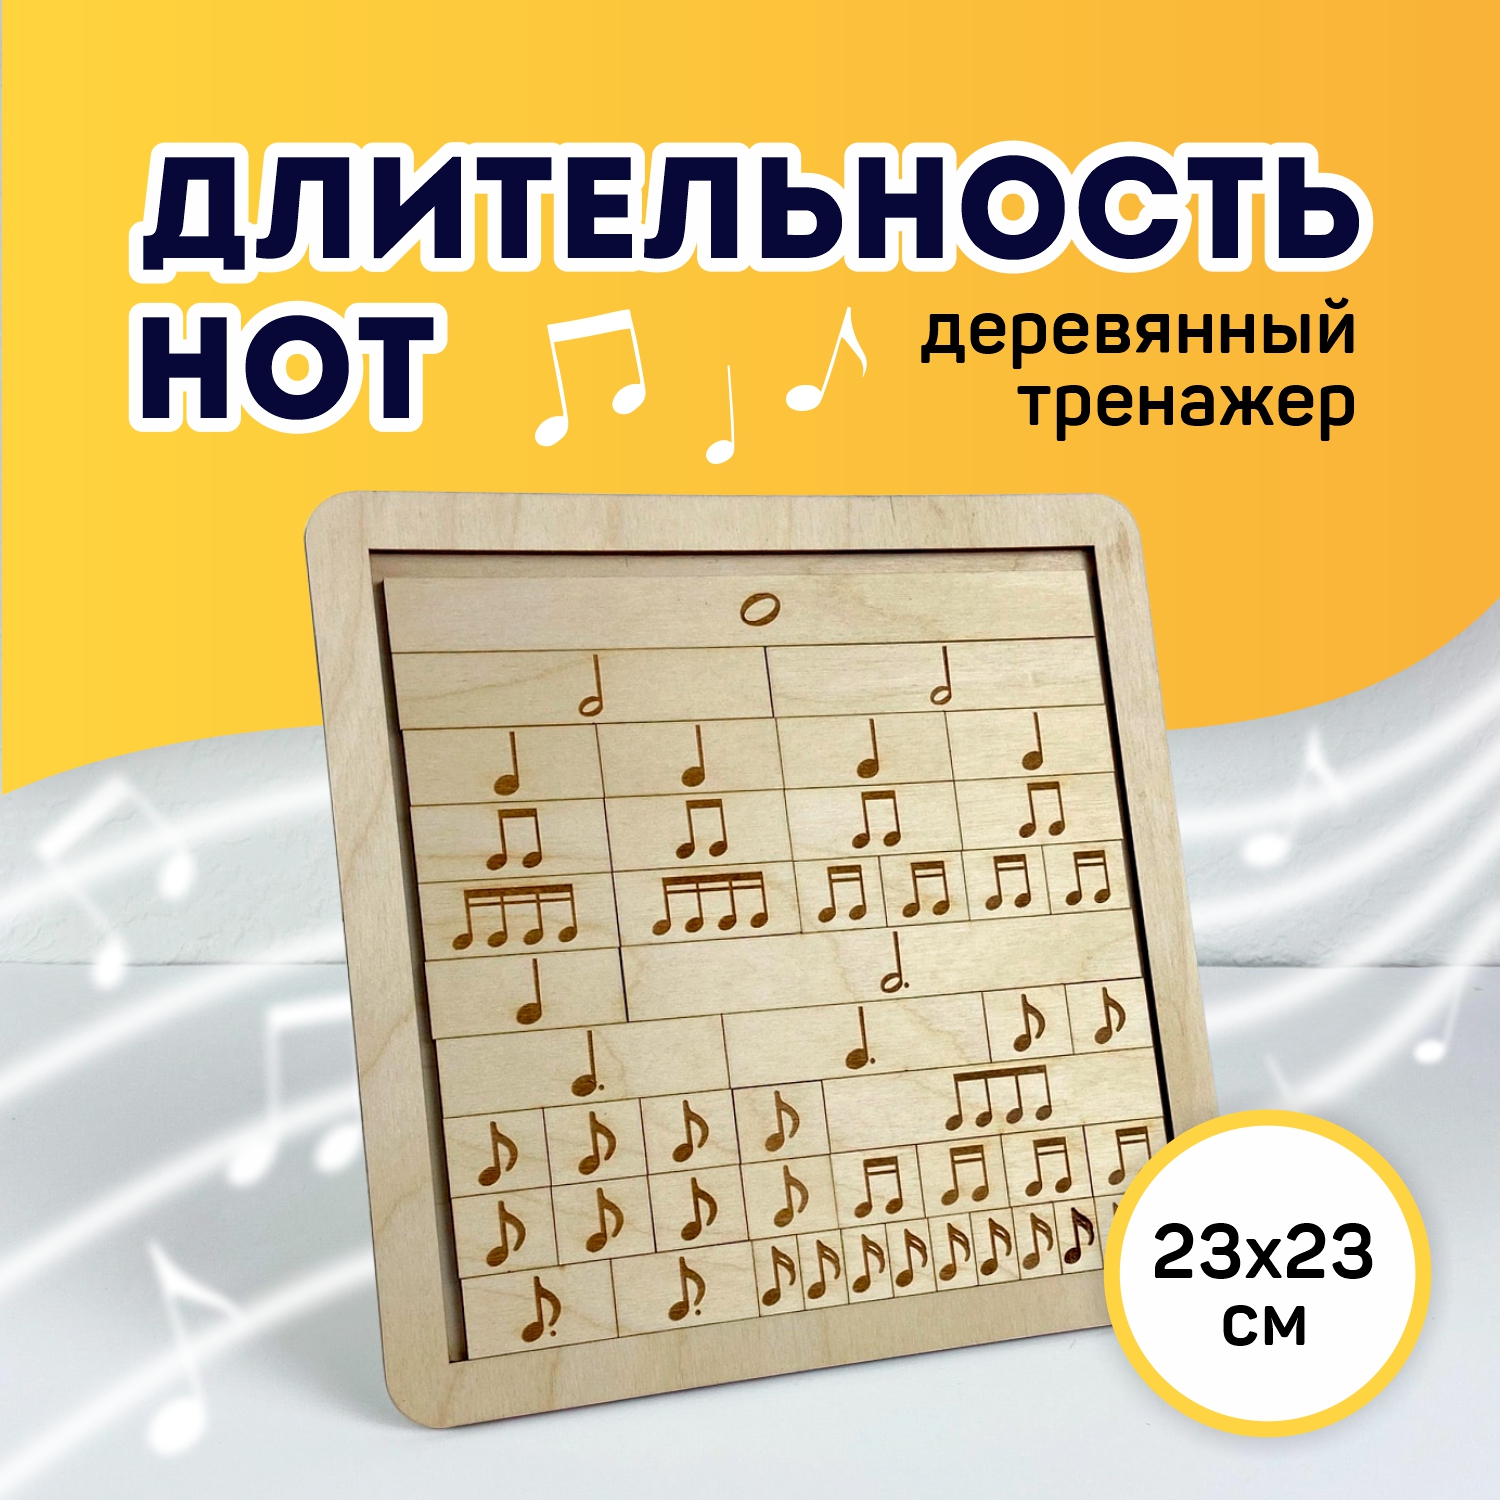 Музыкальный тренажер Выручалкин, Длительность нот, tr003, деревянный